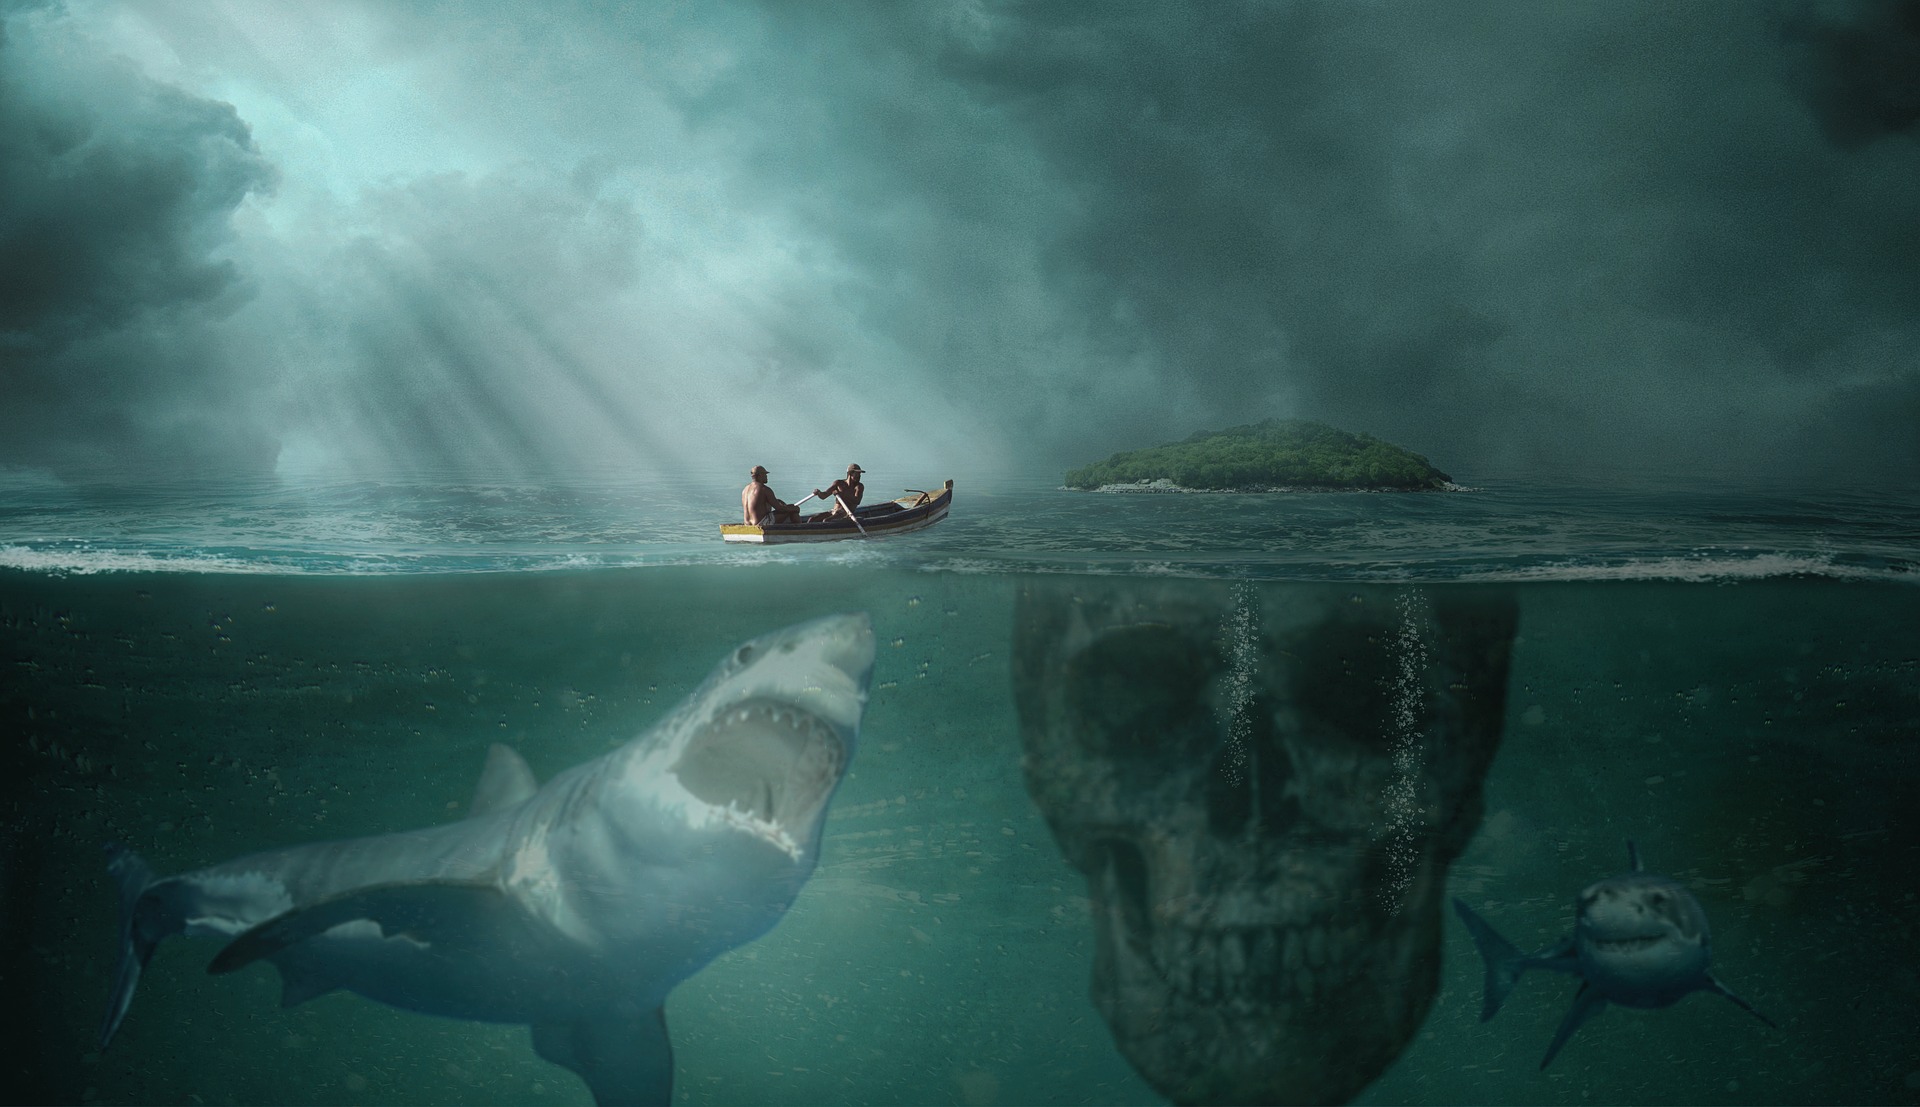 Imagem digital em que se vê um bote com dois homens remando em mar revolto, sob céu de tempestade, rumo a um ilha. Embaixo d'água, vê-se um tubarão se aproximando do bote, com a boca aberta, para abocanhá-lo. Mais abaixo, é possível ver outro tubarão rodeando a área. Por baixo da ilha, submersa, projeta-se a imagem de uma caveira enorme.